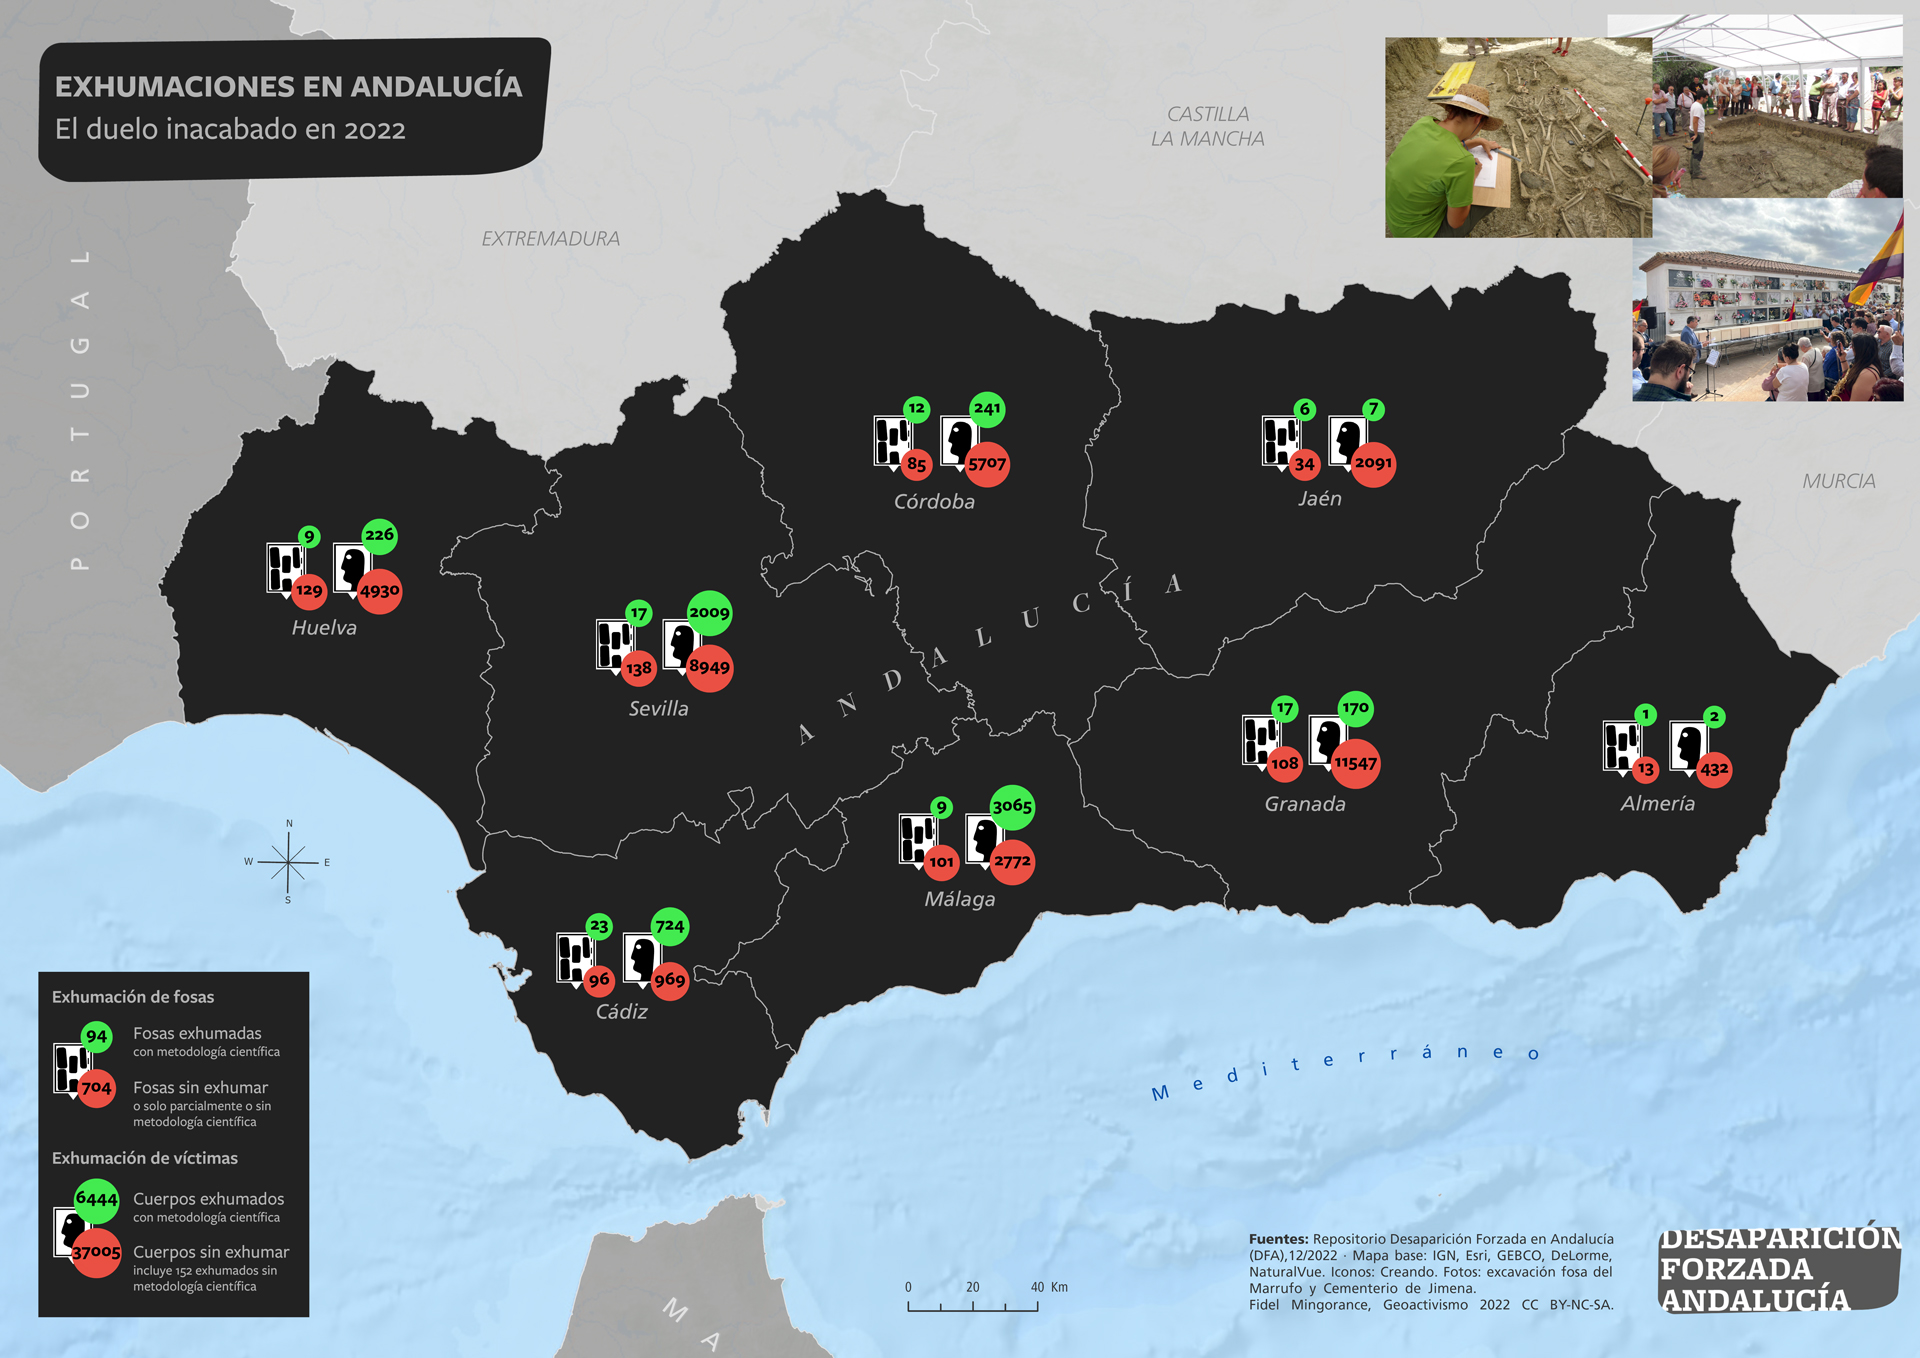 Exhumaciones en Andalucía. El duelo inacabado en 2022